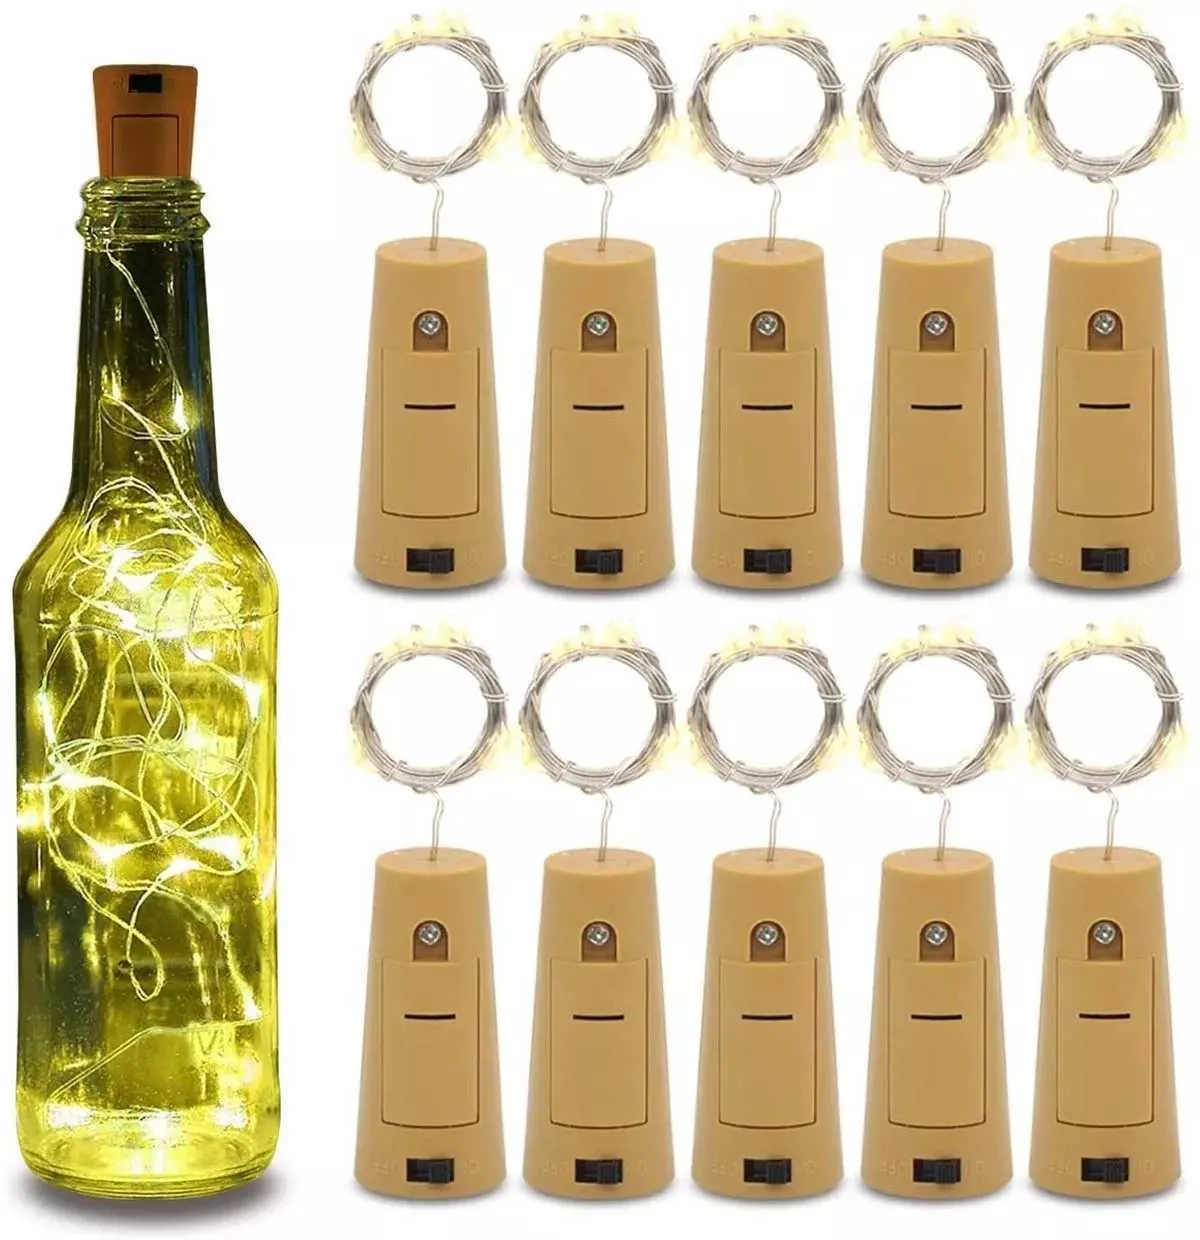 10pcs comprend batterie LED bouteille de vin guirlande lumineuse fil de cuivre guirlande lumineuse bricolage liège lumière pour anniversaire mariage décoration de noël 211015